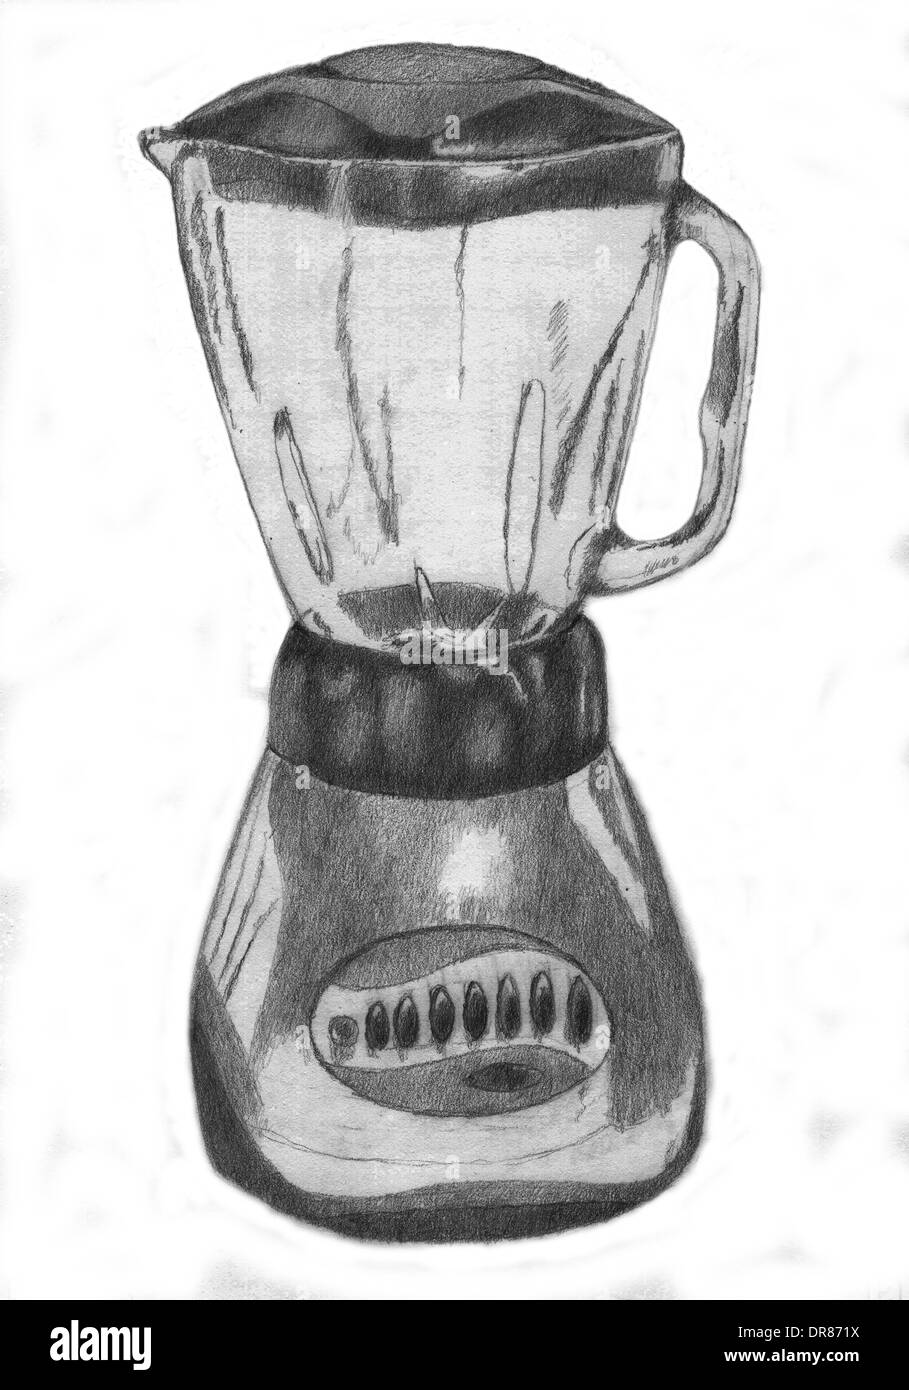 Licuadora Con motor y Vaso de Cristal Ilustracion Dibujo Stockfoto